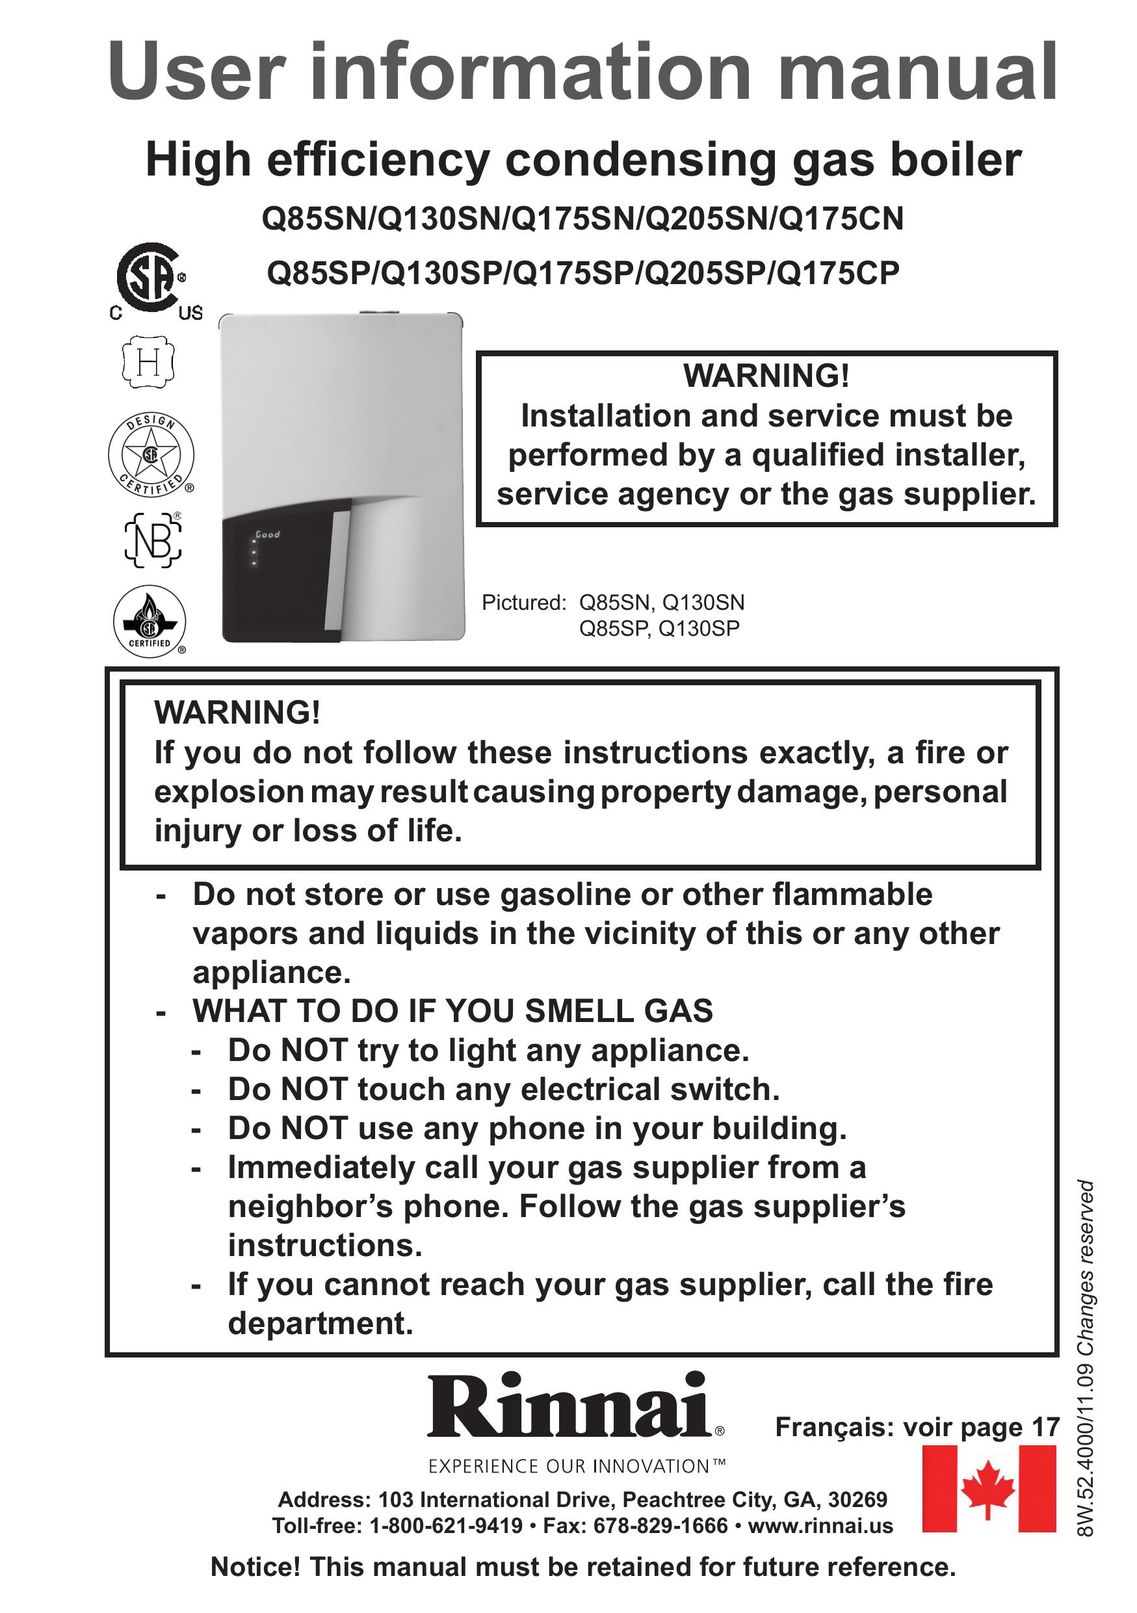 Rinnai Q175SP Boiler User Manual